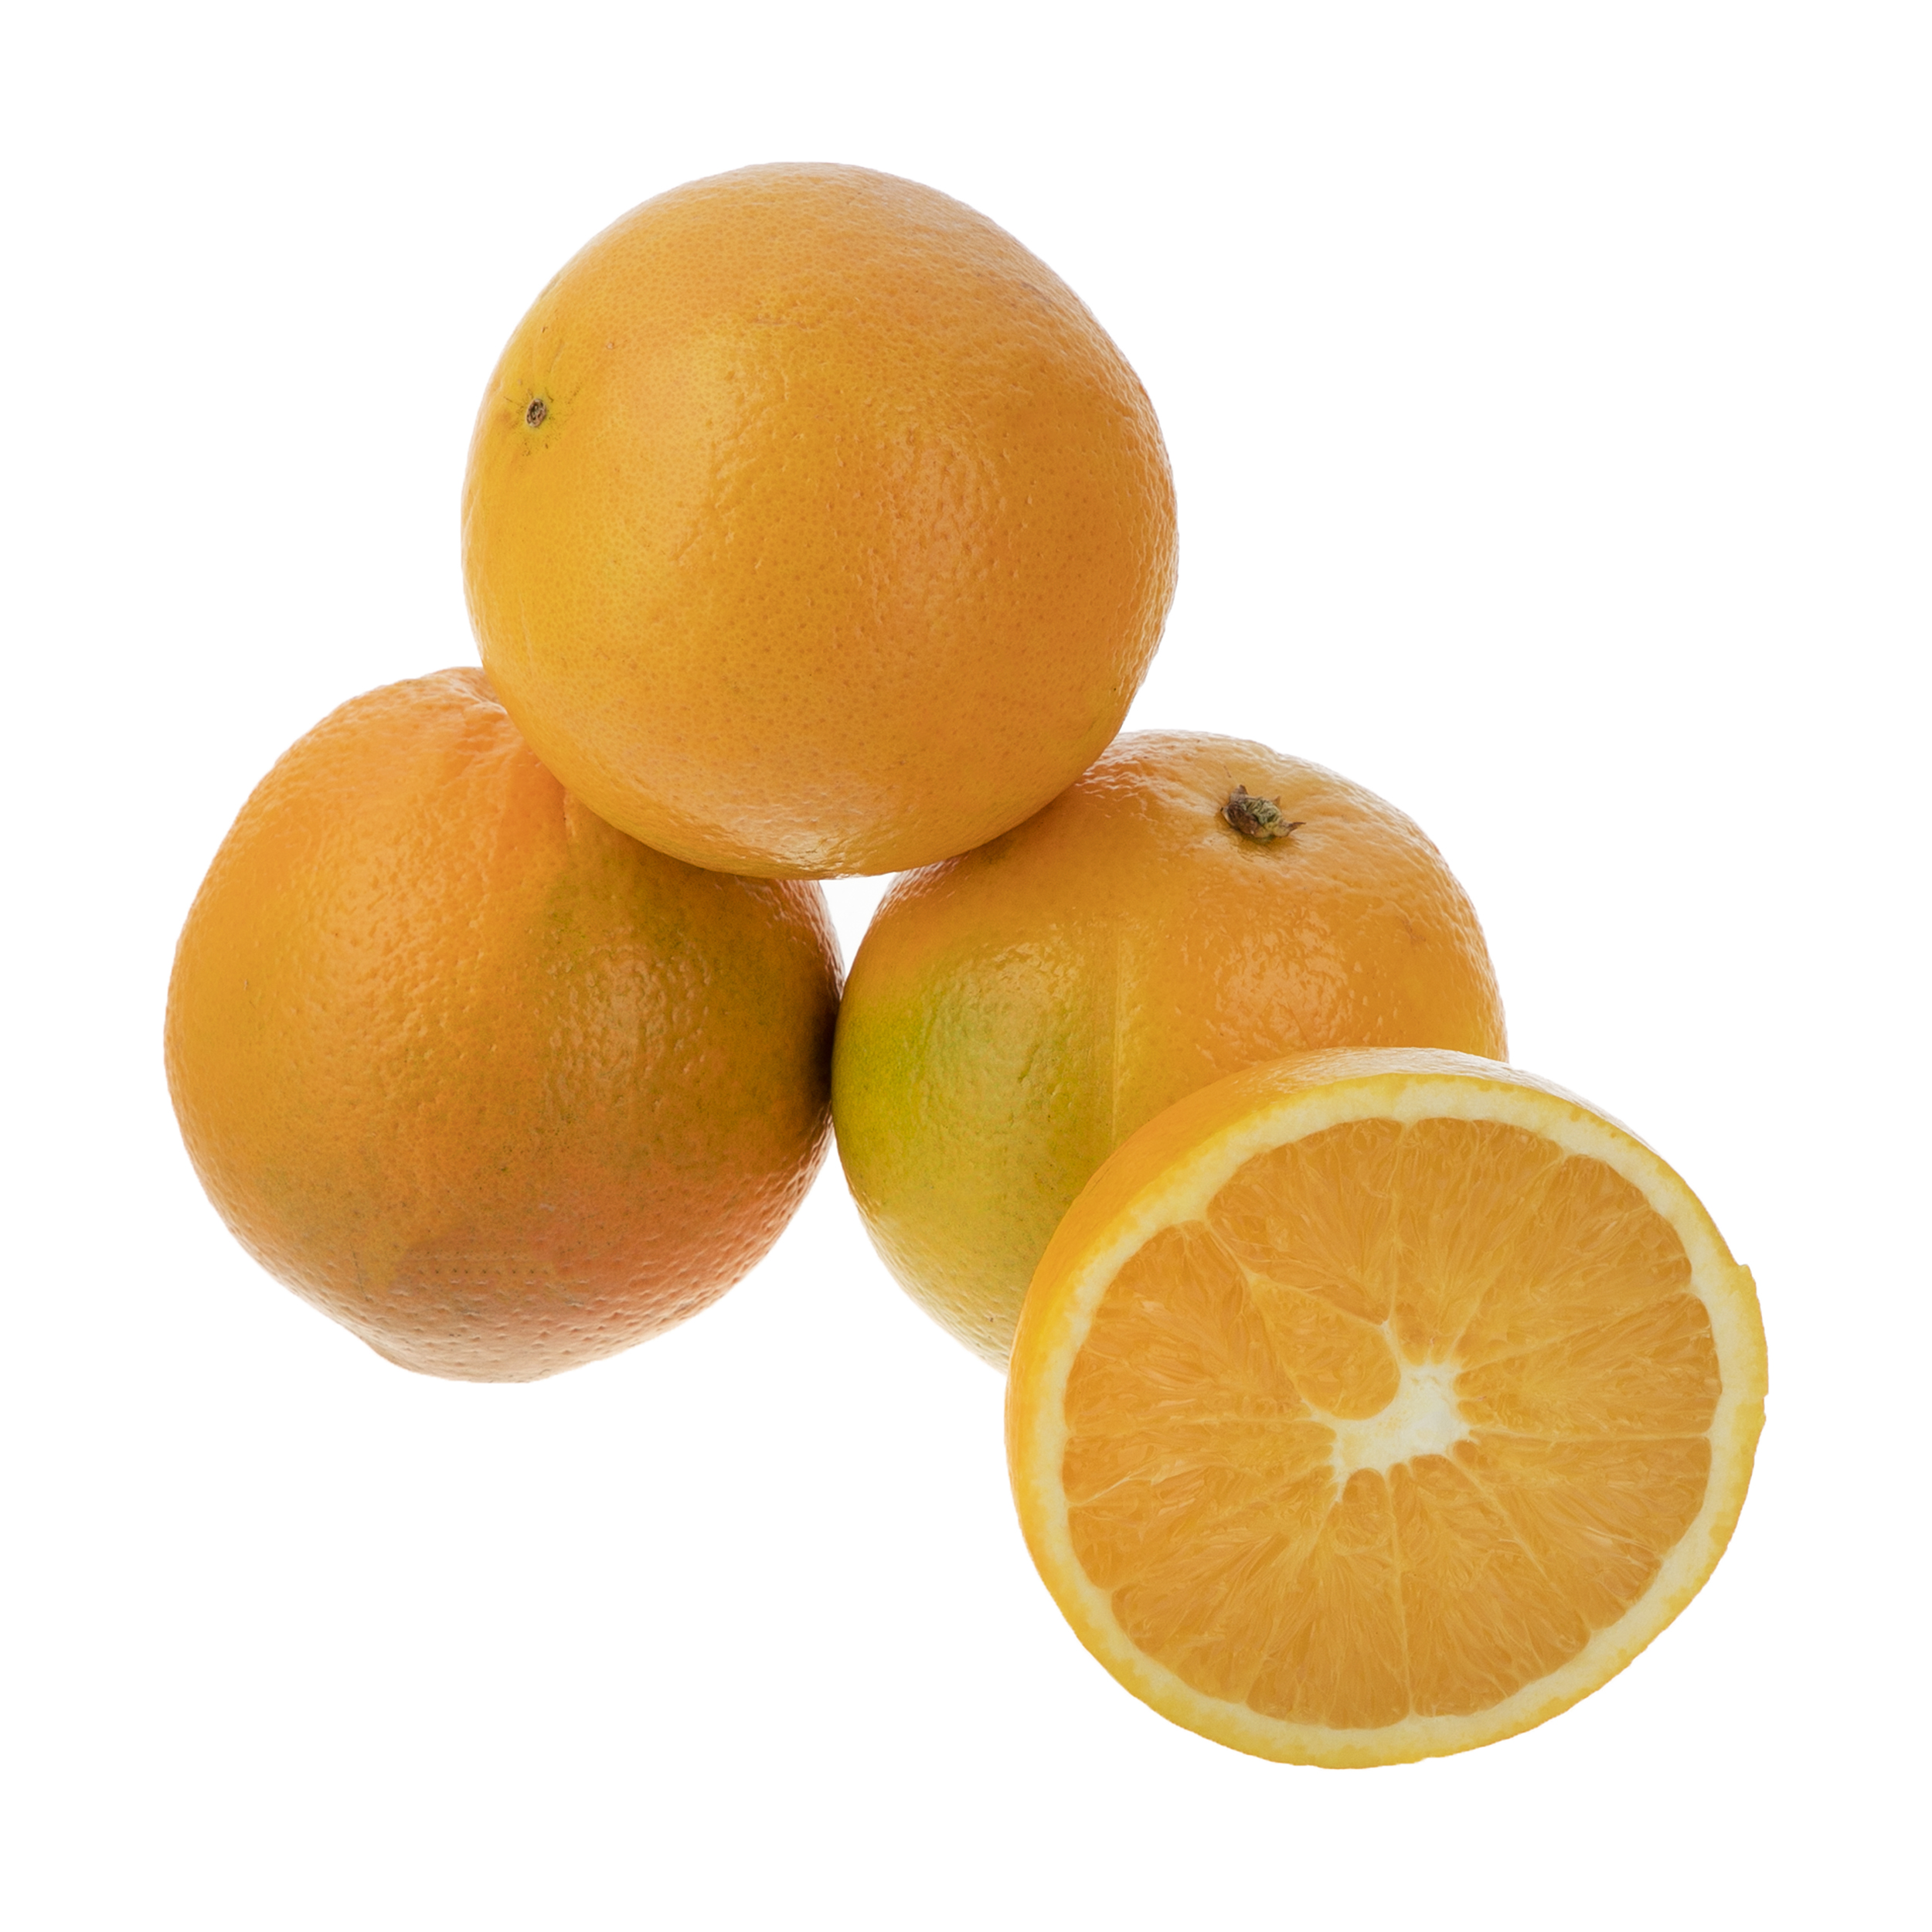 پرتقال میوری - 1 کیلوگرم